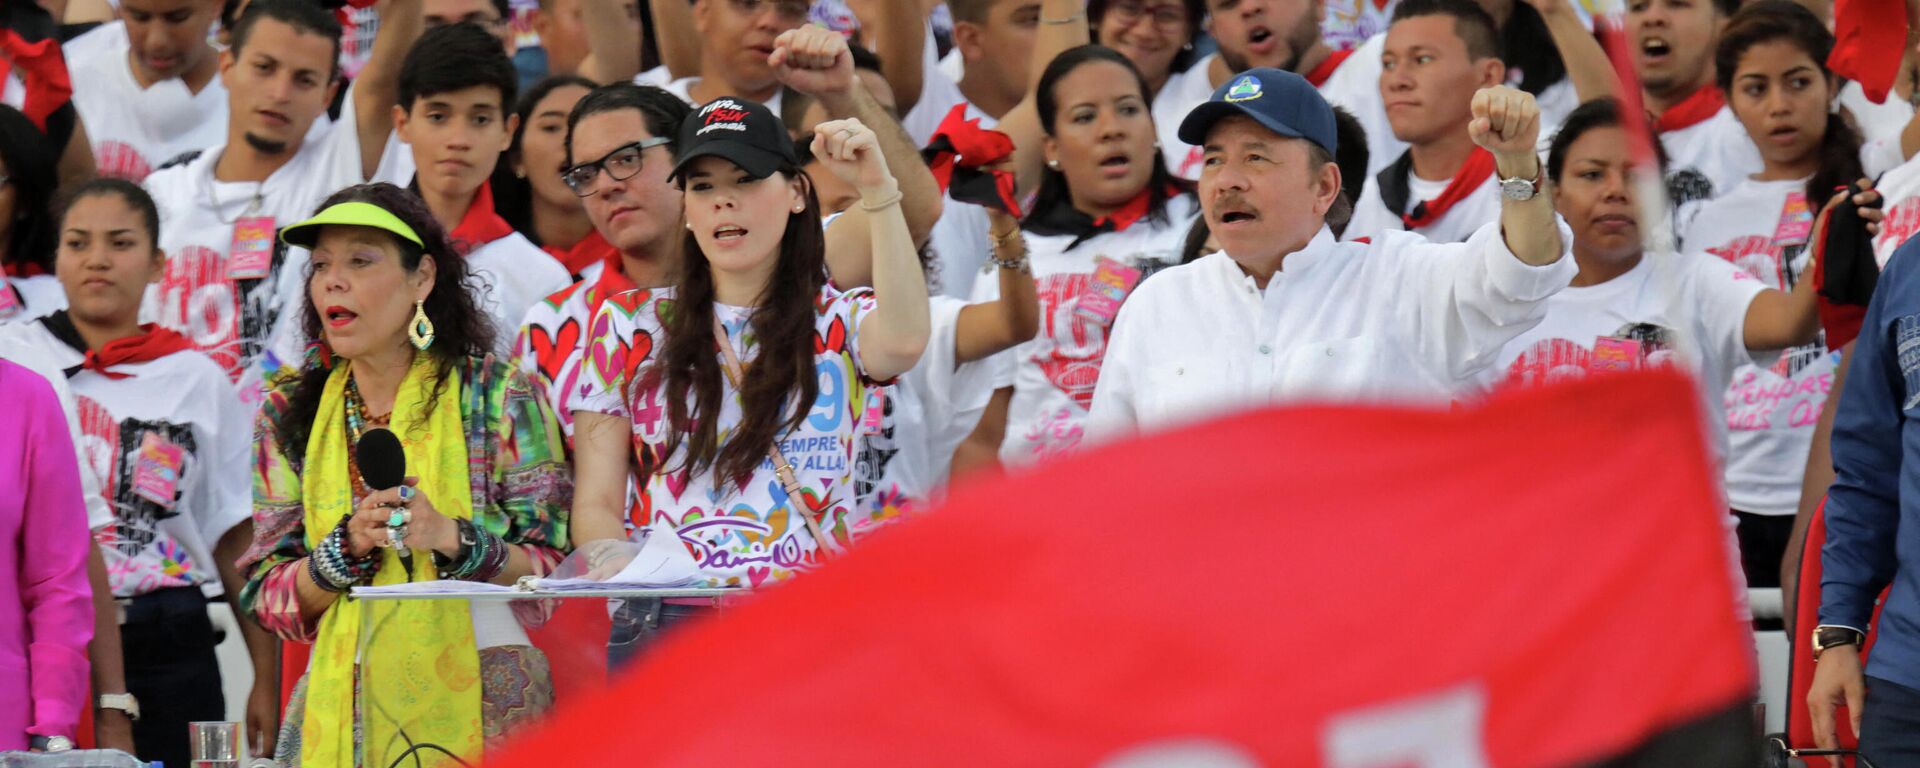 El presidente nicaragüense Daniel Ortega, su esposa, la vicepresidenta Rosario Murillo y su hija Camila Ortega  - Sputnik Mundo, 1920, 09.06.2021